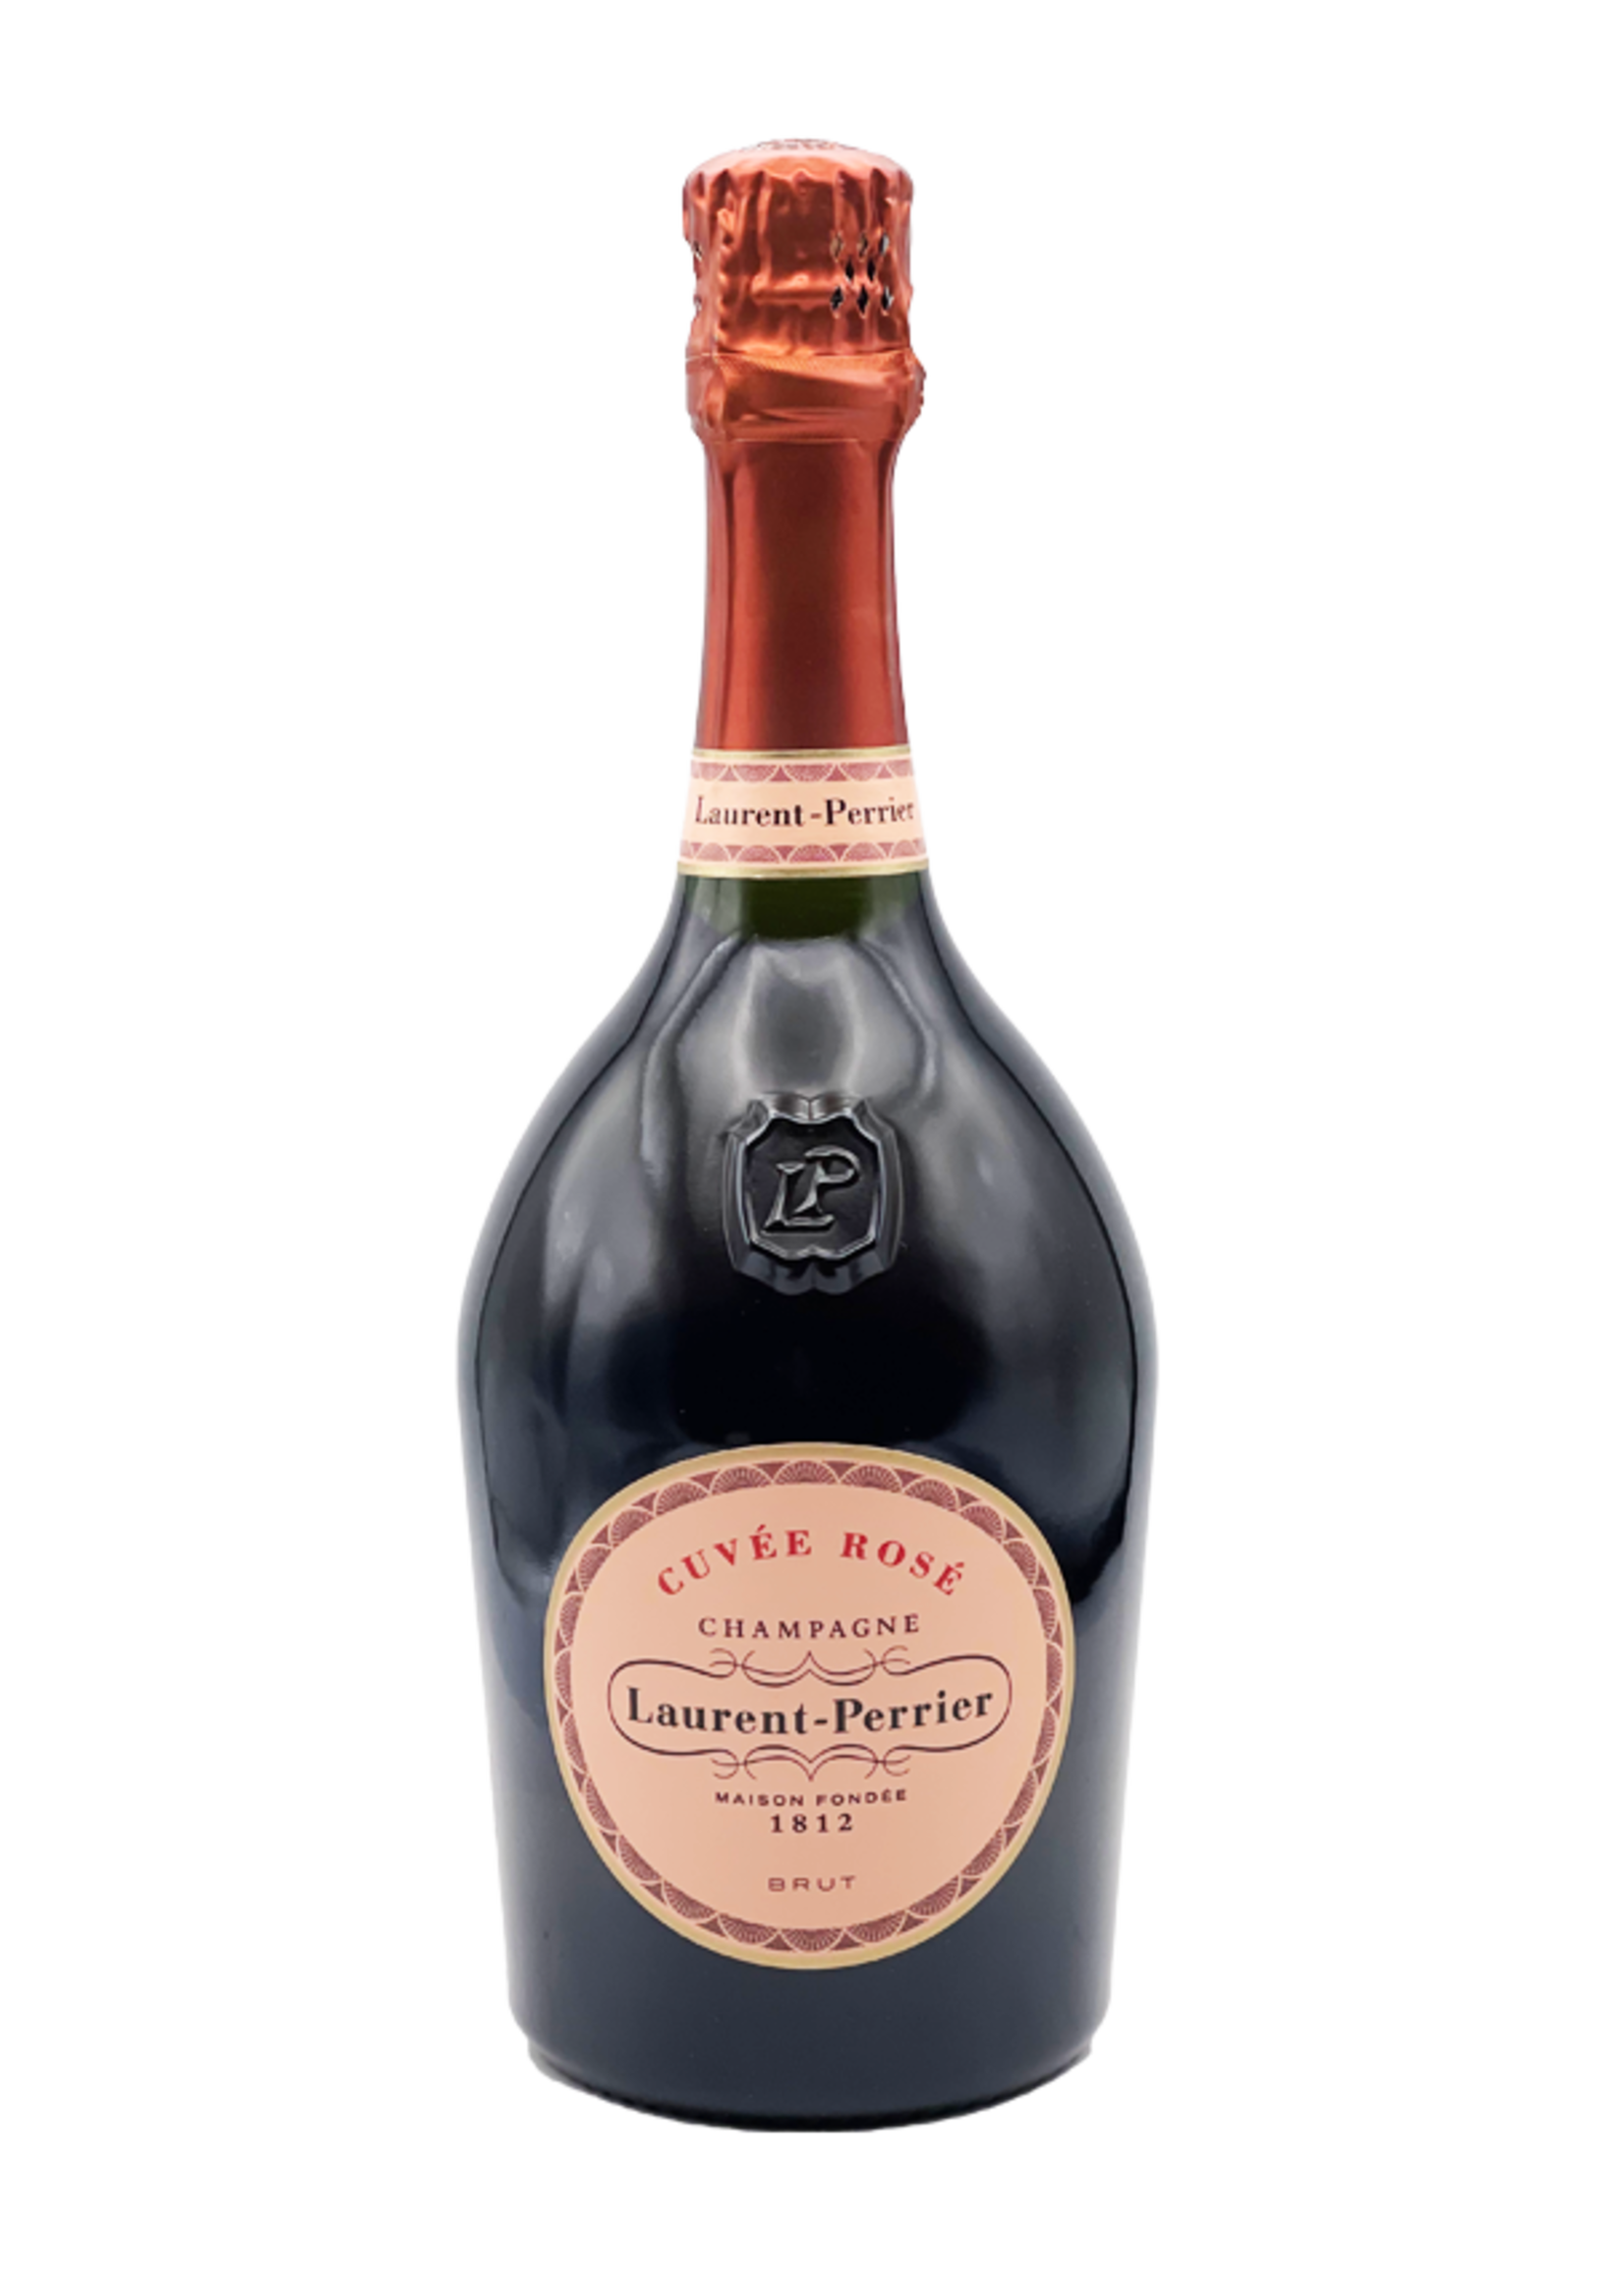 Champagne "Brut Cuvee Rose" NV Laurent-Perrier